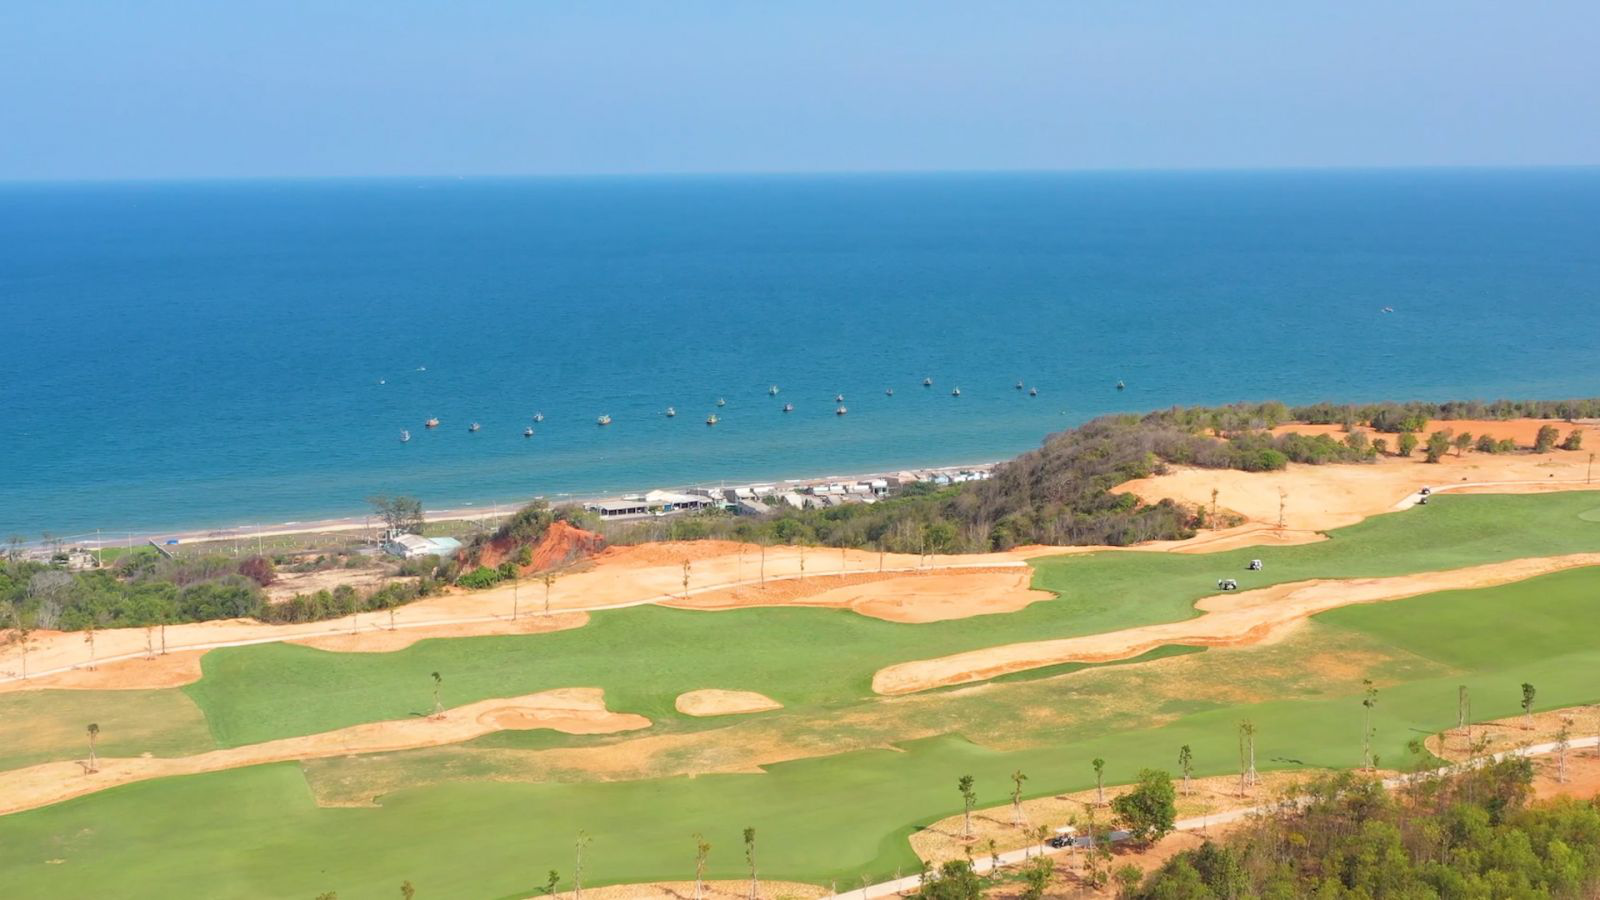 Cụm sân Golf PGA độc quyền 36 hố thuộc chuỗi sân golf tiêu chuẩn quốc tế do Nova Golf Clubs vận hành và phát triển tại NovaWorld Phan Thiet Bình Thuận.